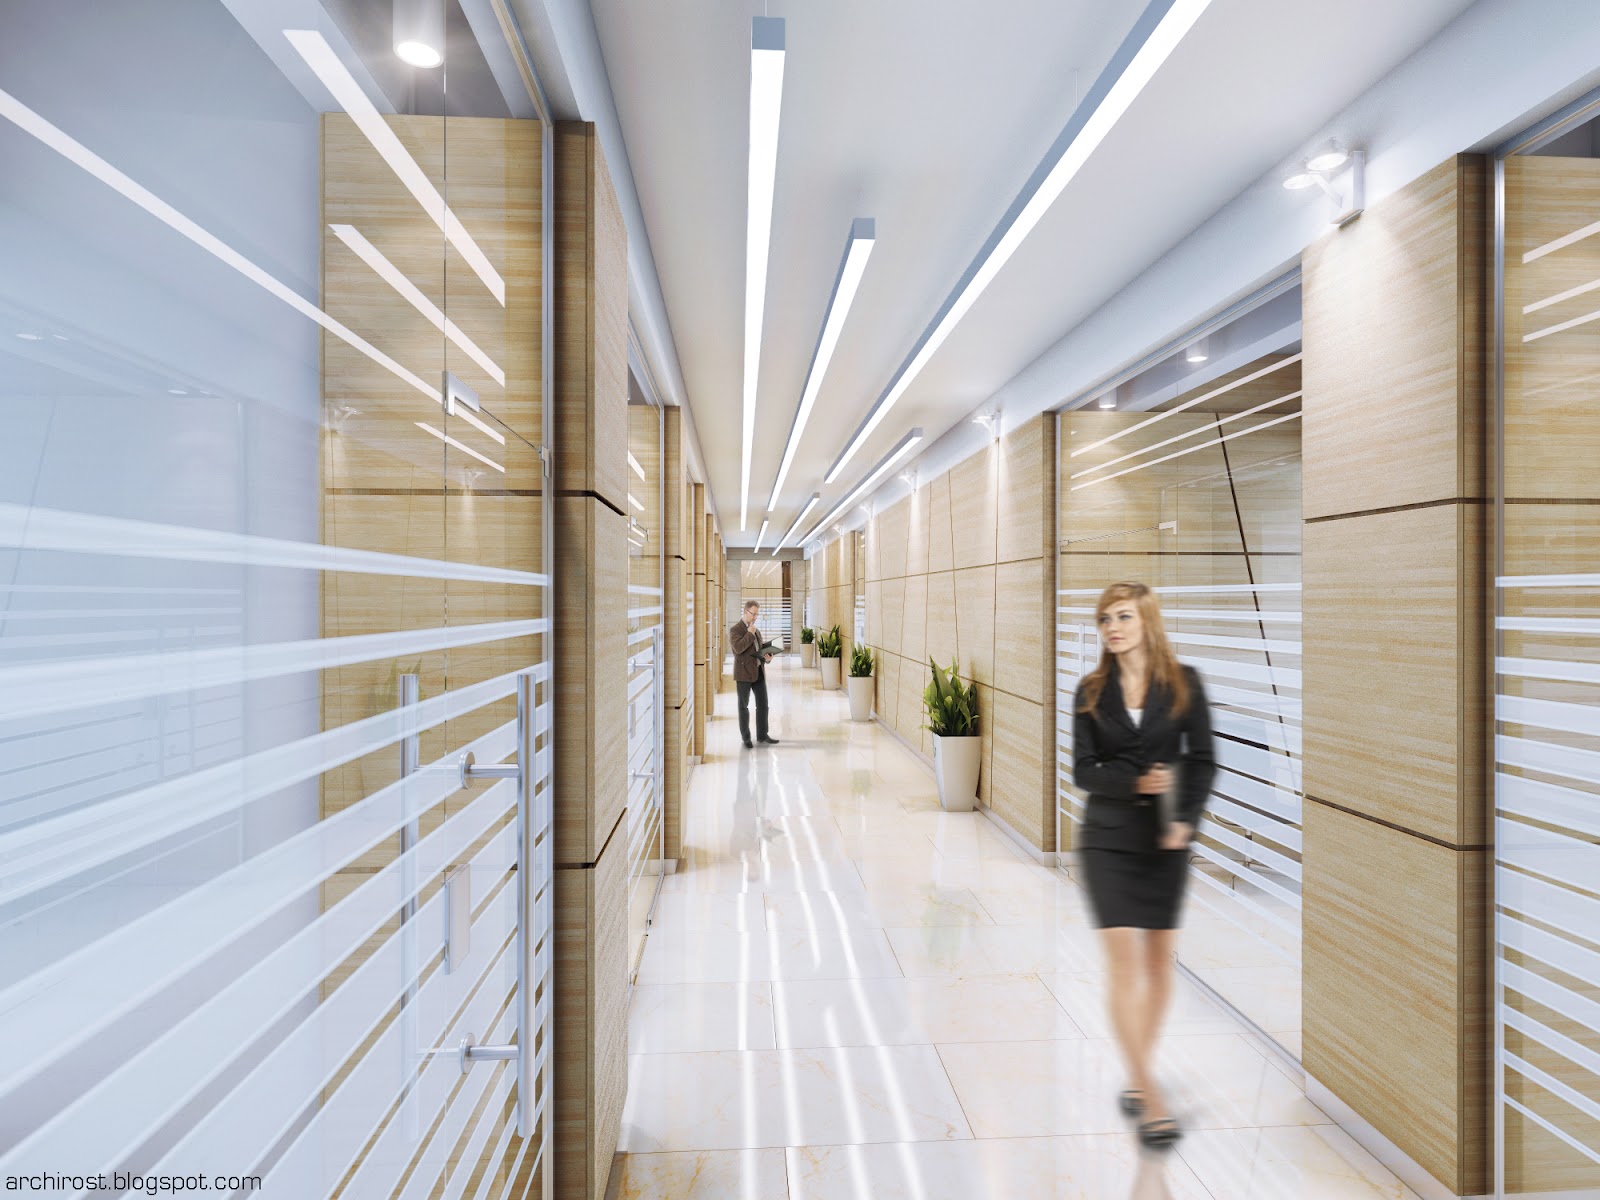 Ries3 etagi com личный. Освещение коридоров в общественных зданиях. Коридор офиса. Офис внутри коридор. Дизайн офисного коридора.